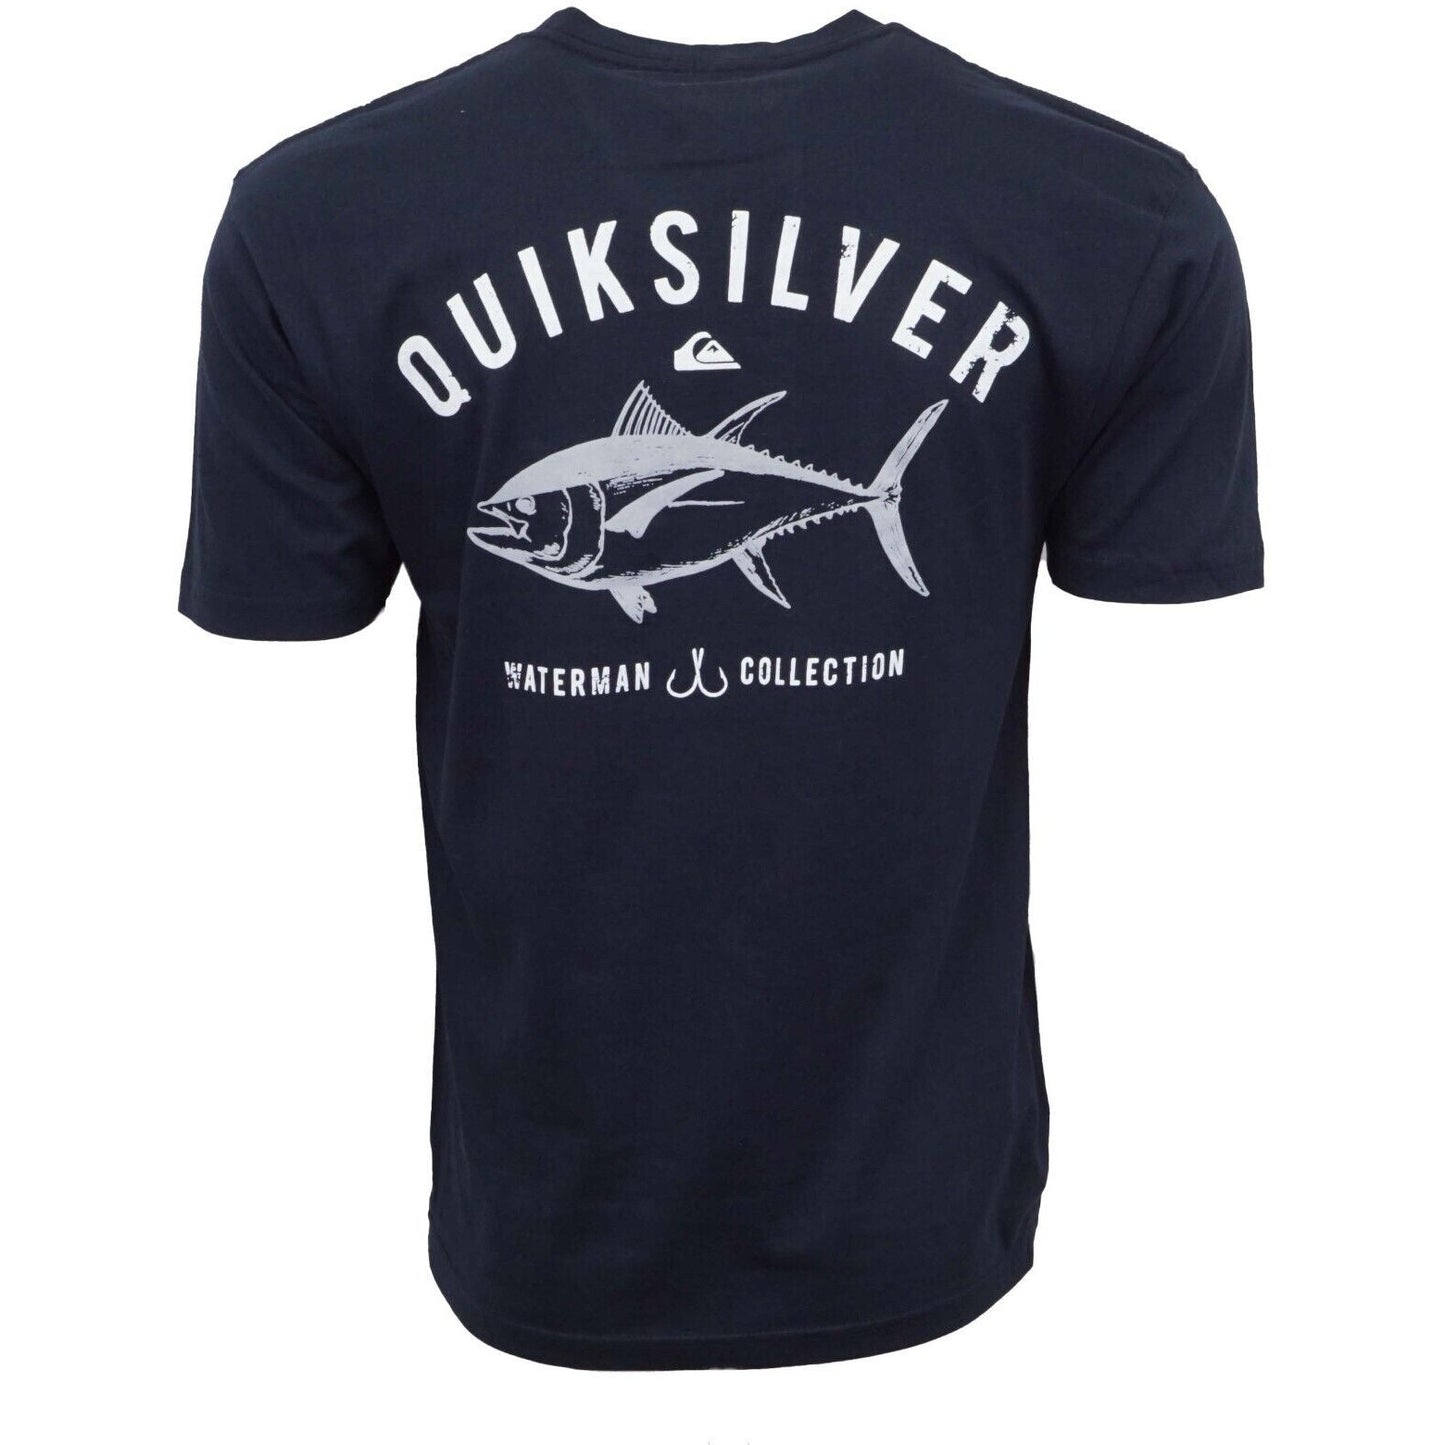 Quiksilver Tuna Fish T shirt